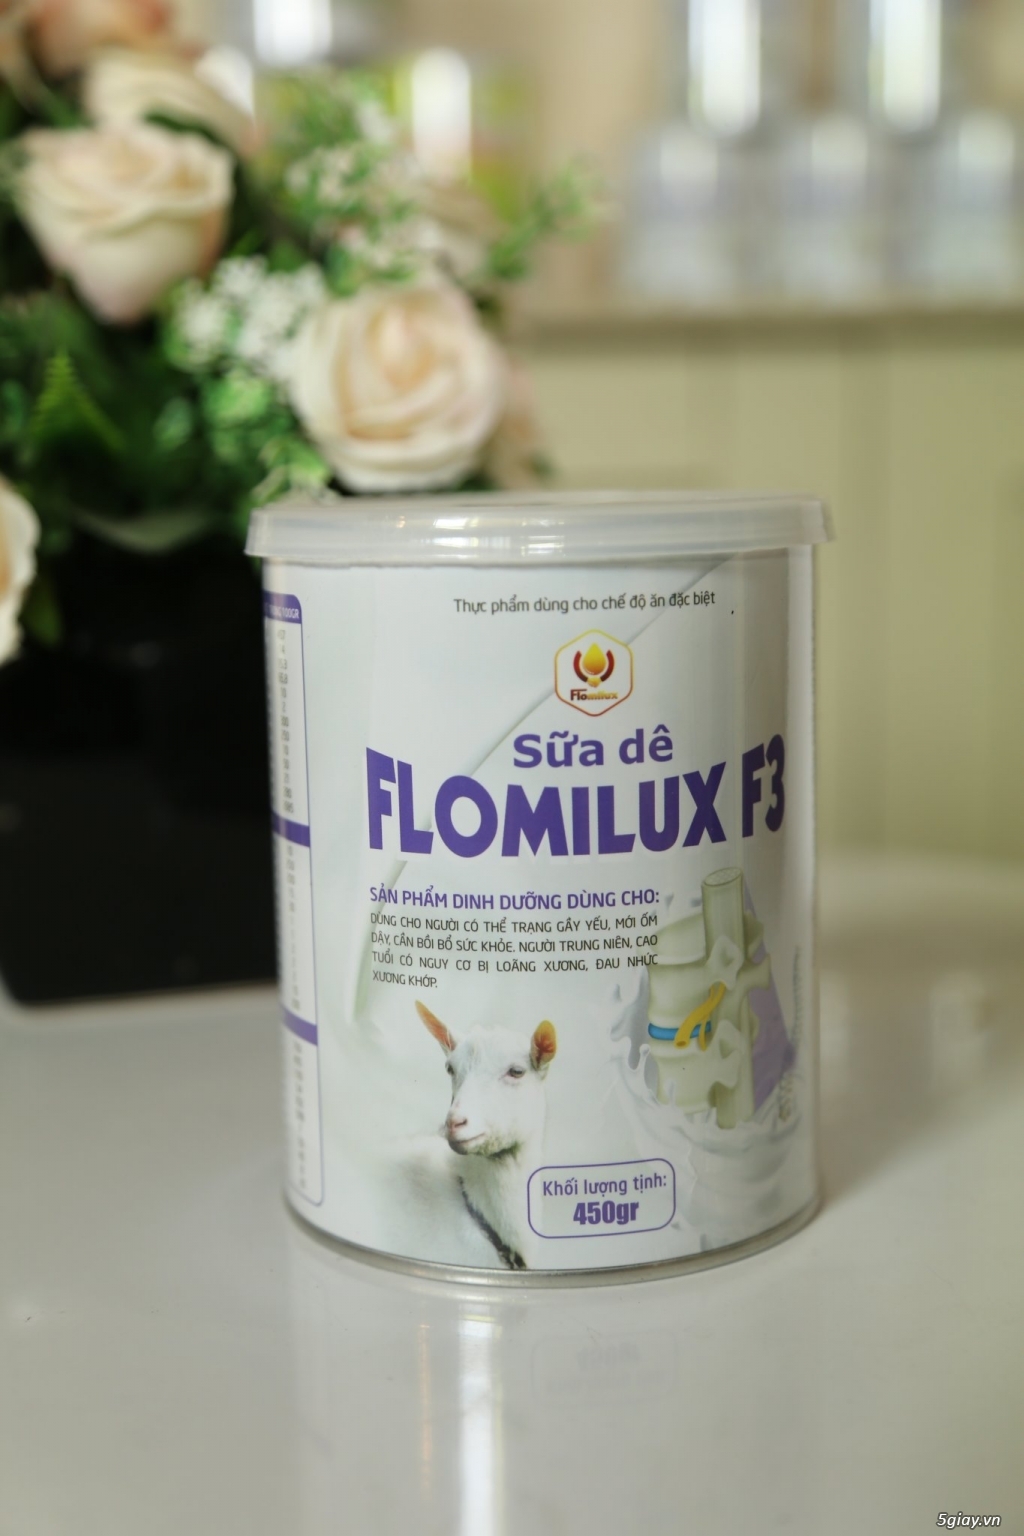 Sữa dê Flomilux F3 chuyên dành cho người đau nhức xương khớp, 690k